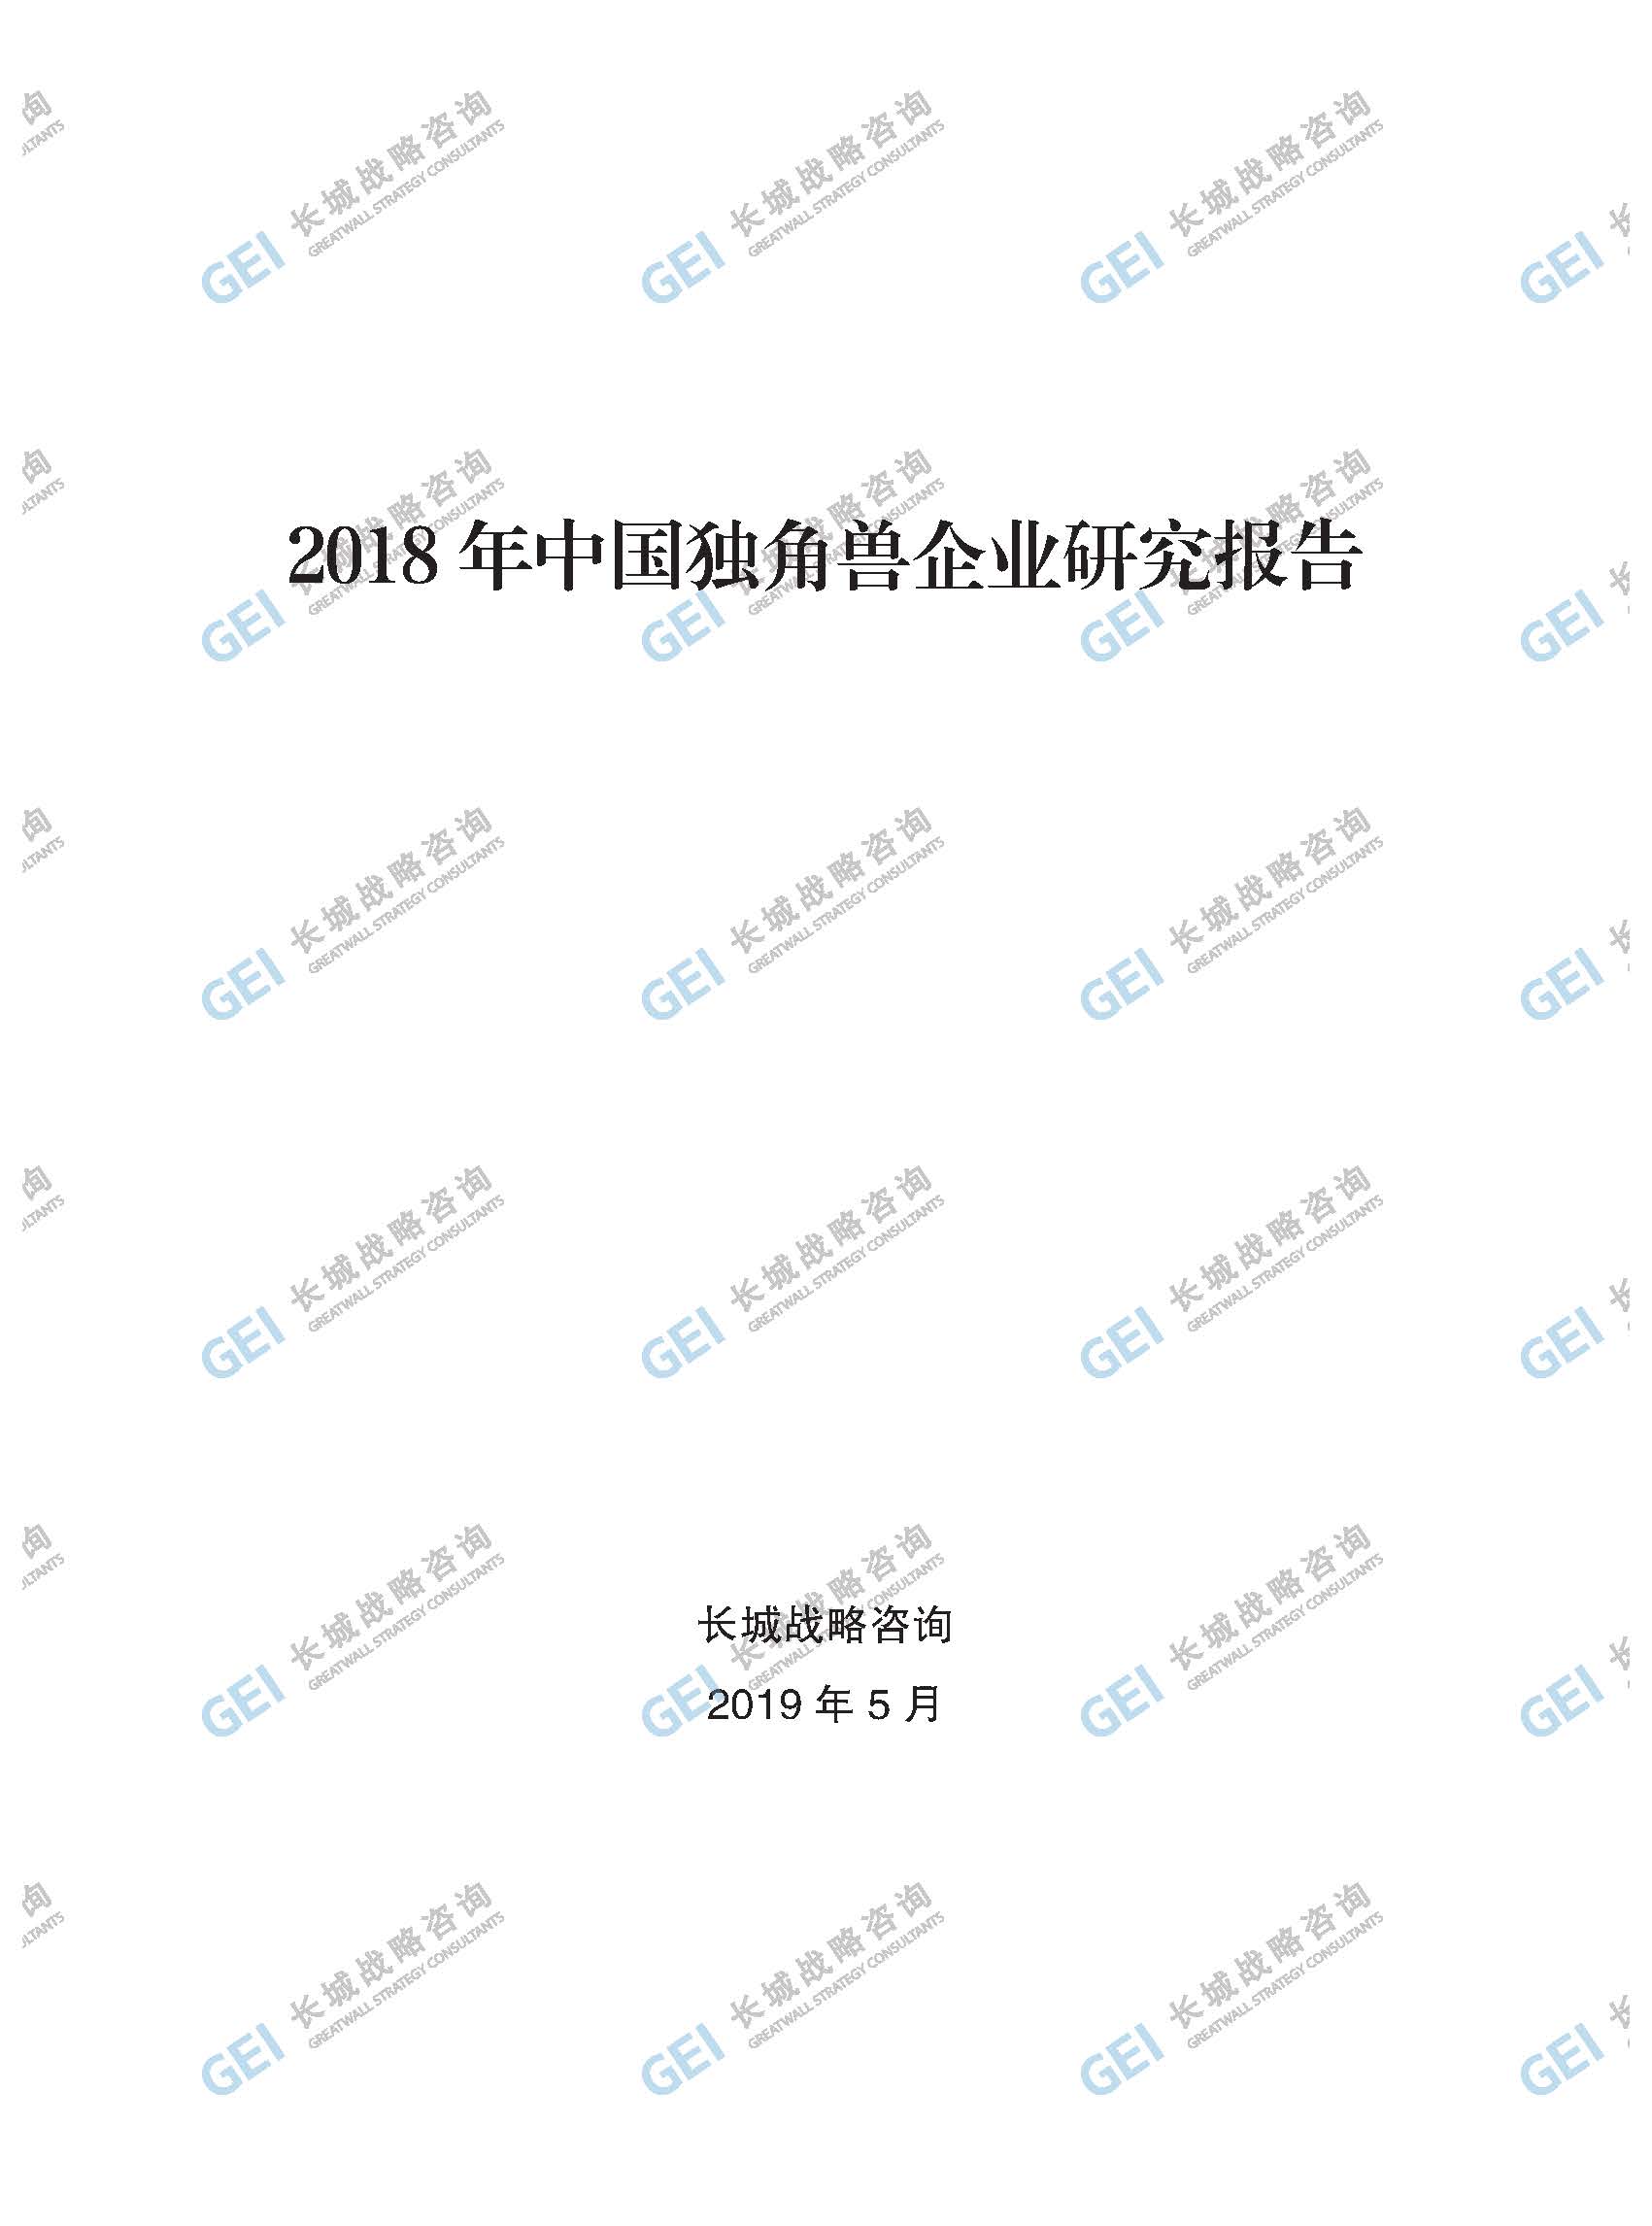 2018年中國獨角獸企業研究報告-加水印-已壓縮_頁面_001.jpg